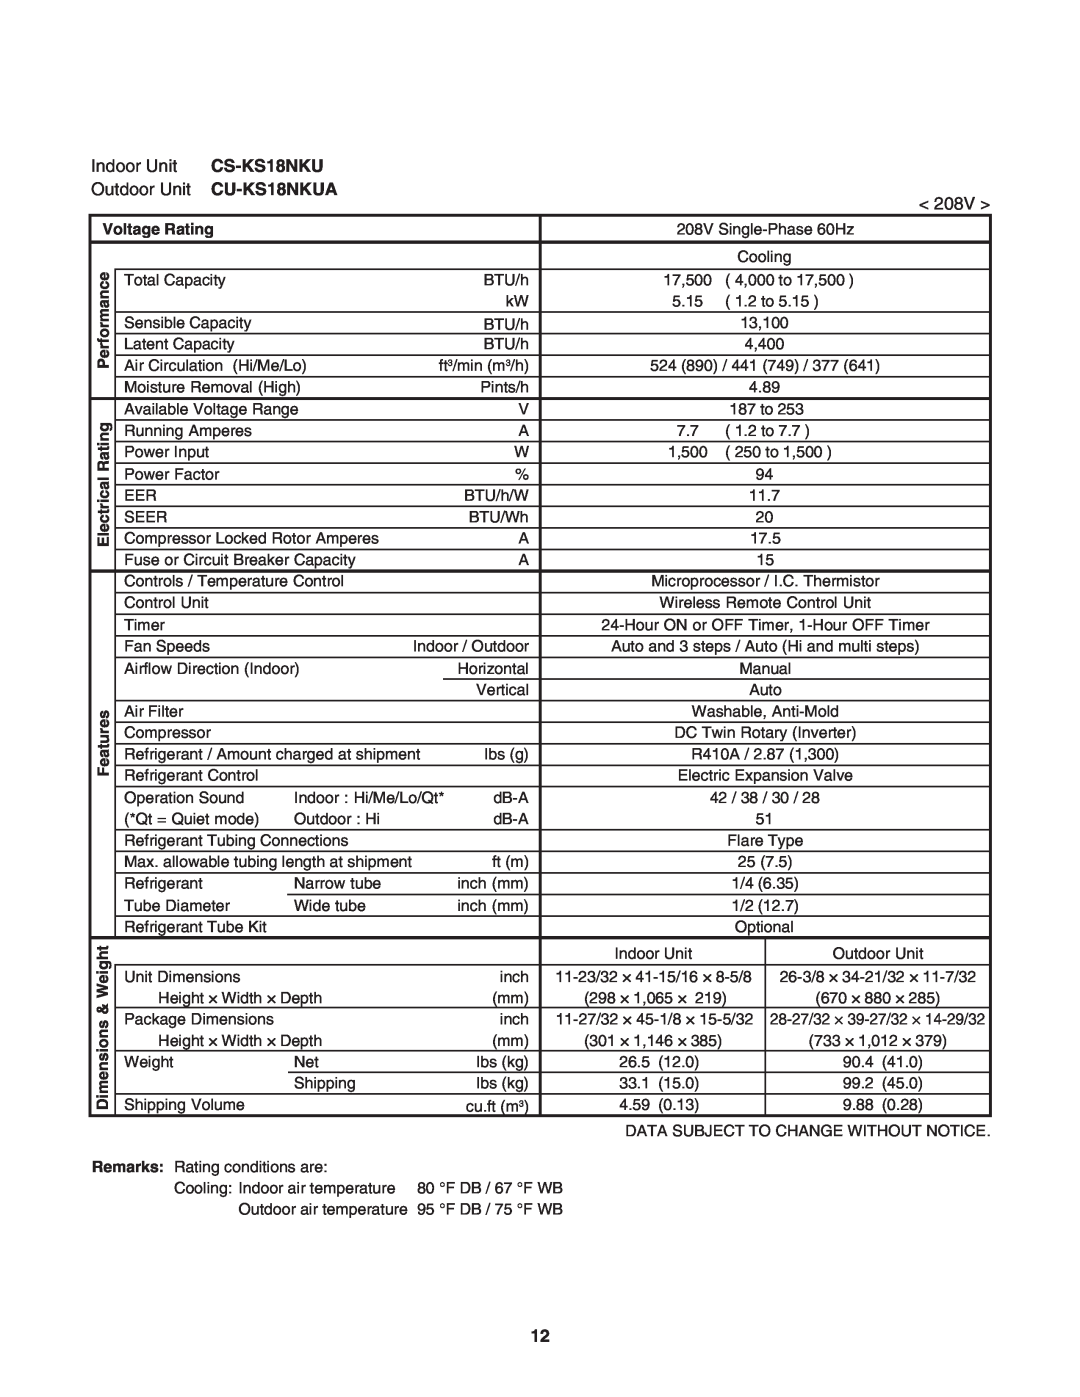 Panasonic service manual CS-KS18NKU, CU-KS18NKUA, Voltage Rating, ical, Electr 